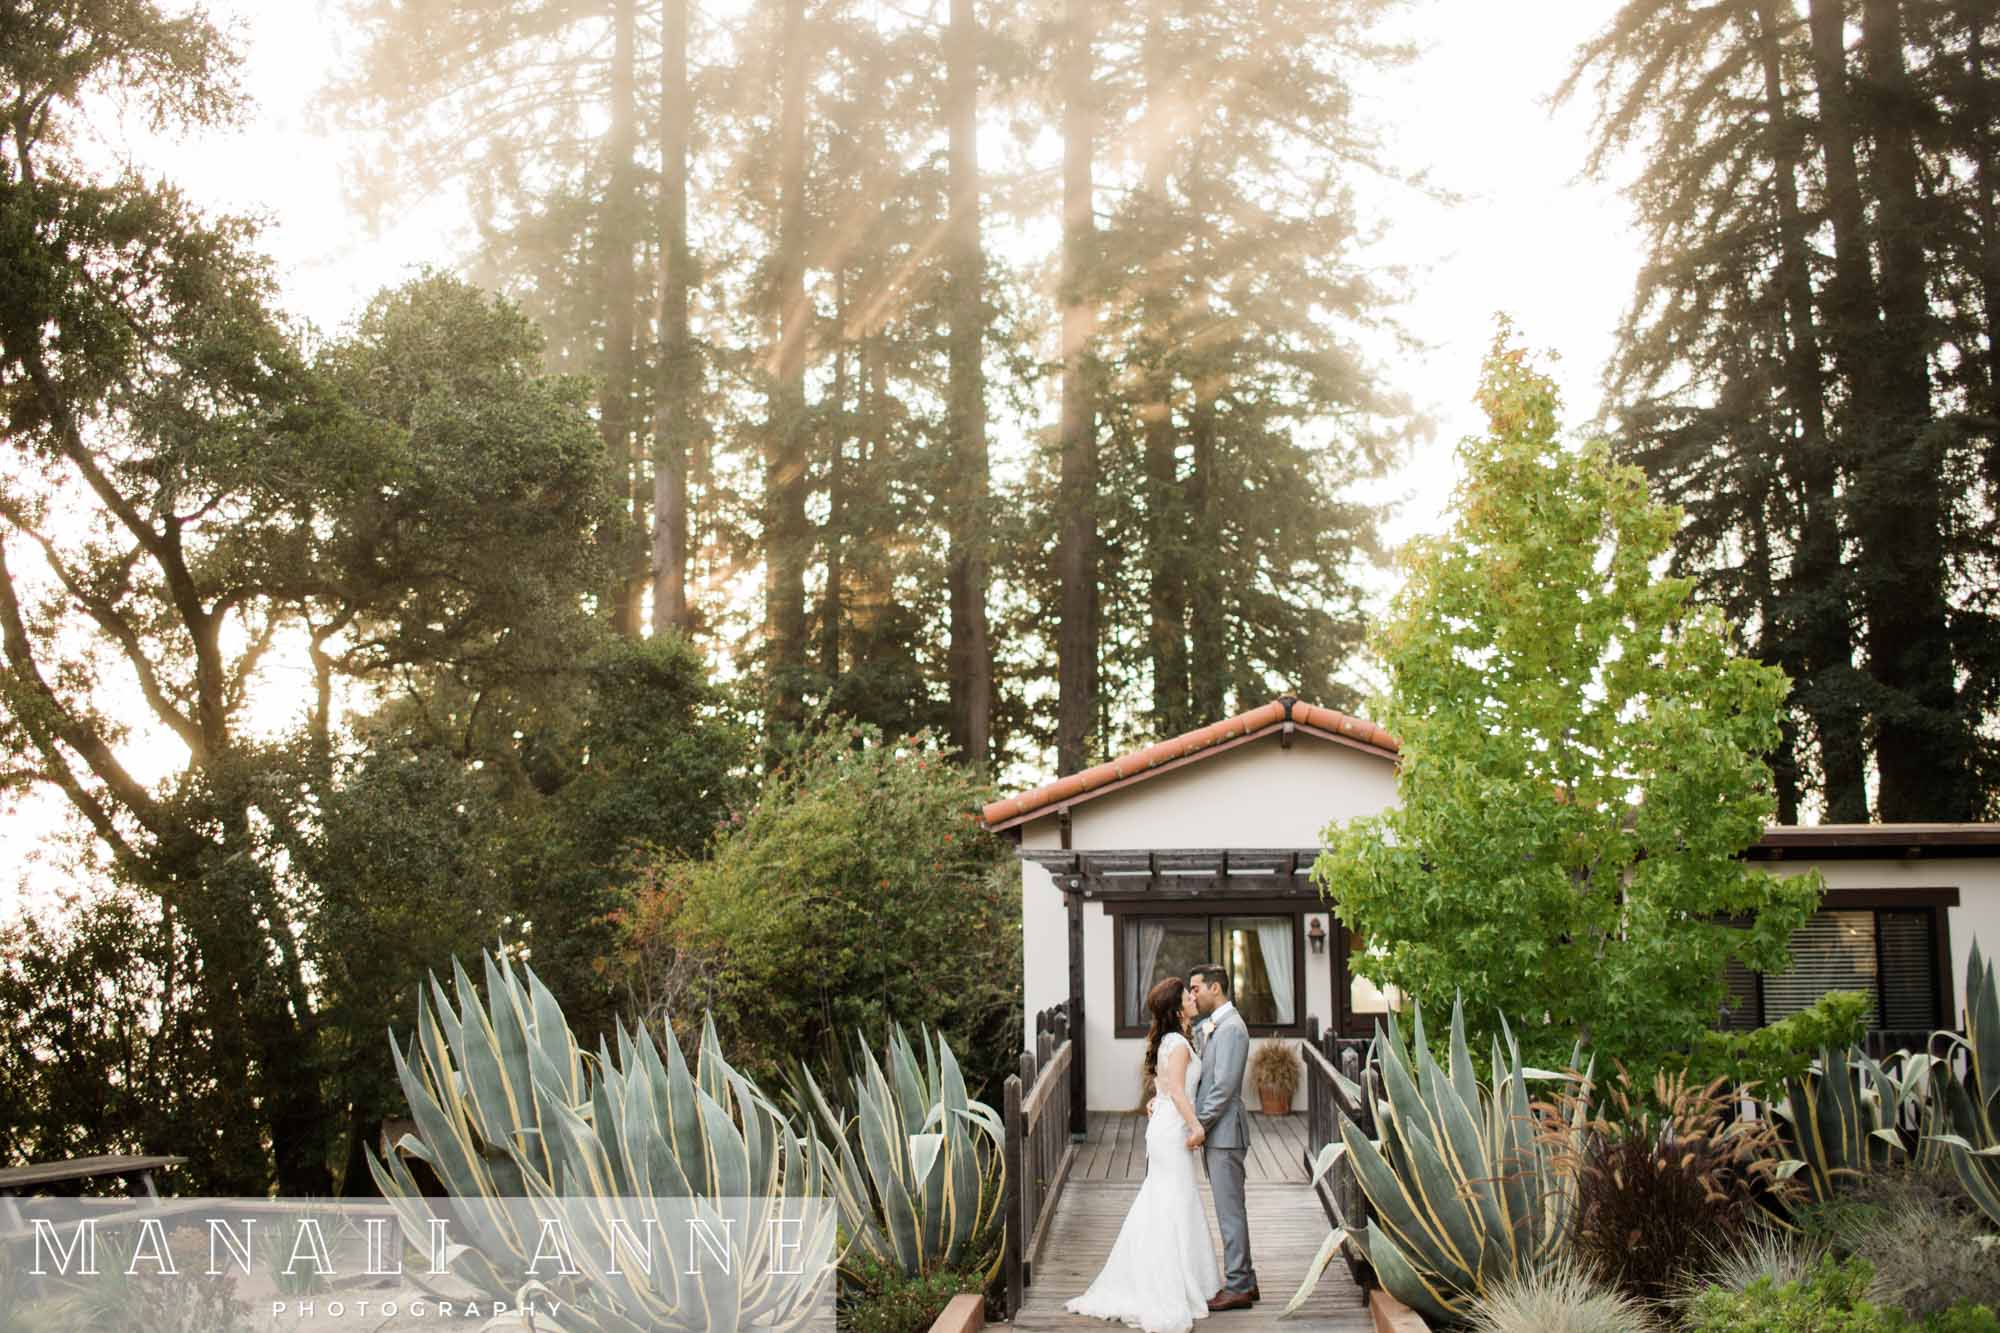 CA,Kennolyn - Hilltop Hacienda,Santa Cruz,Wedding photos,